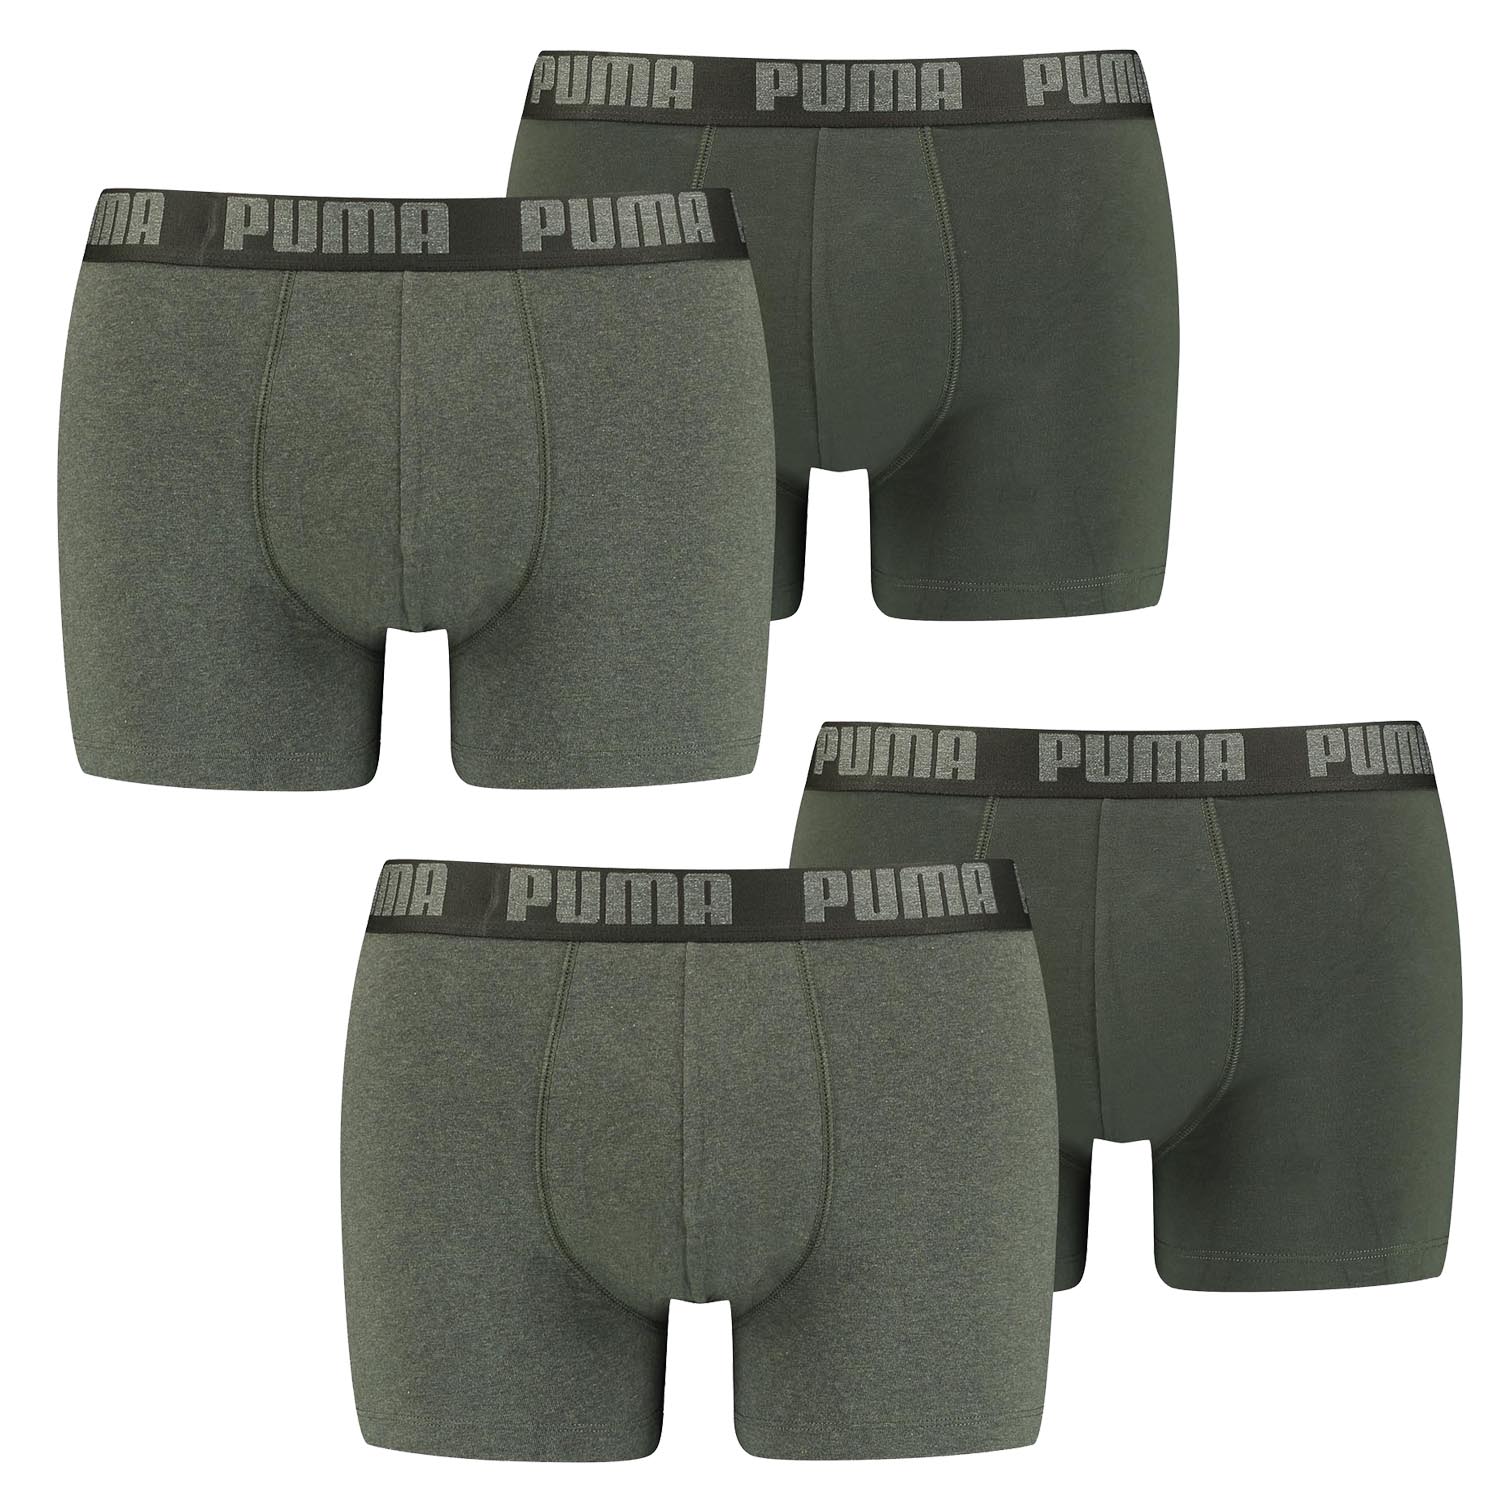 4 er Pack Puma Boxer Boxershorts Men Herren Unterhose Pant Unterwäsche